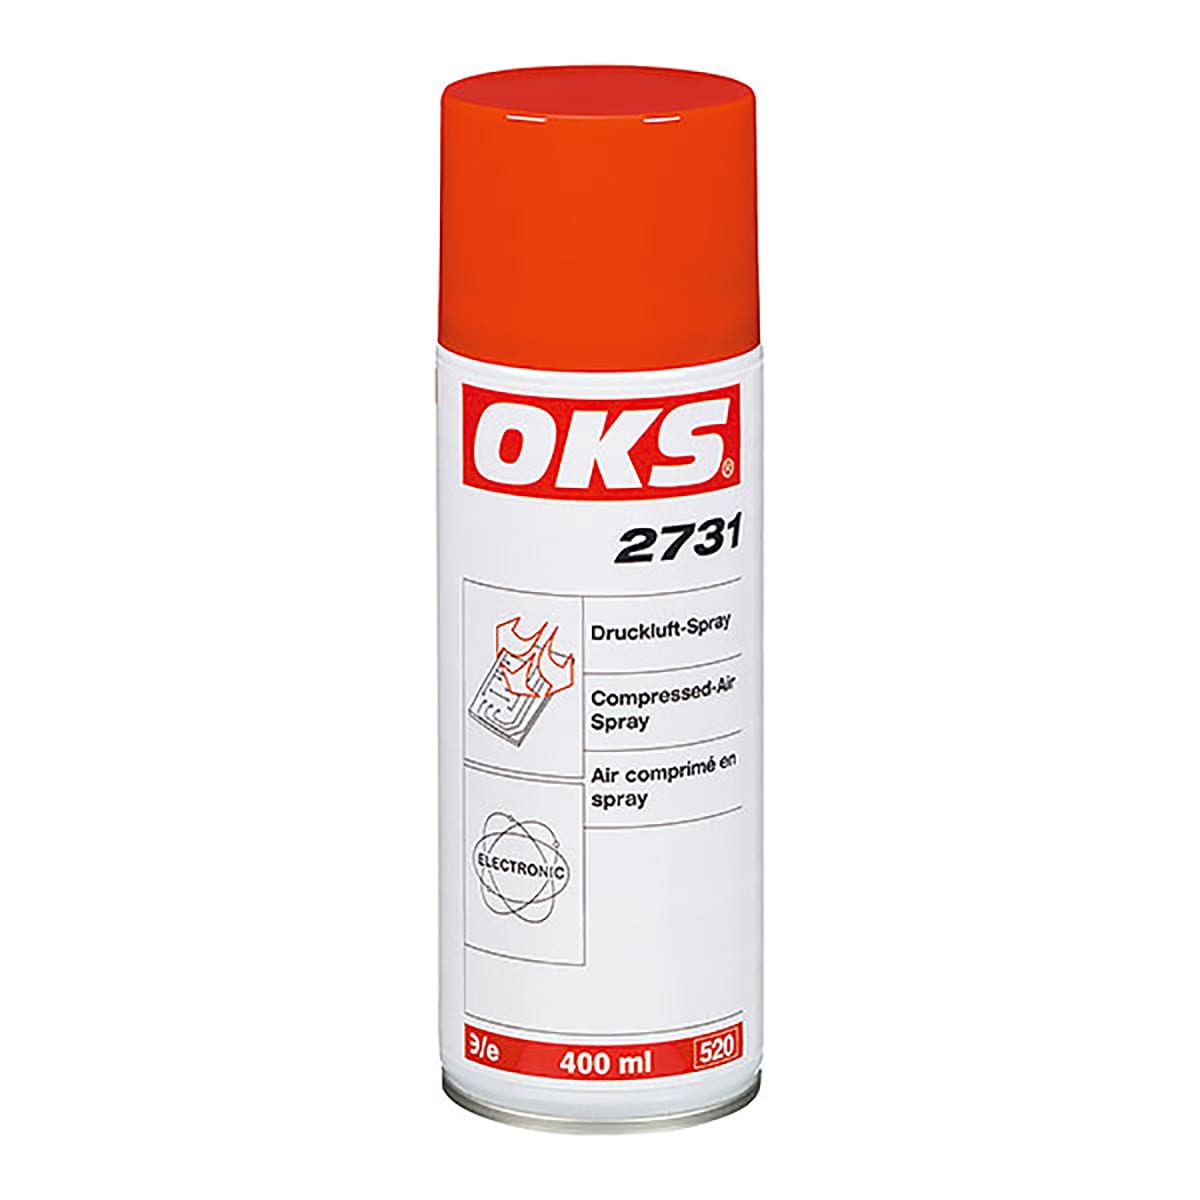 OKS Druckluft-Spray - No. 2731 Spray: 400 ml